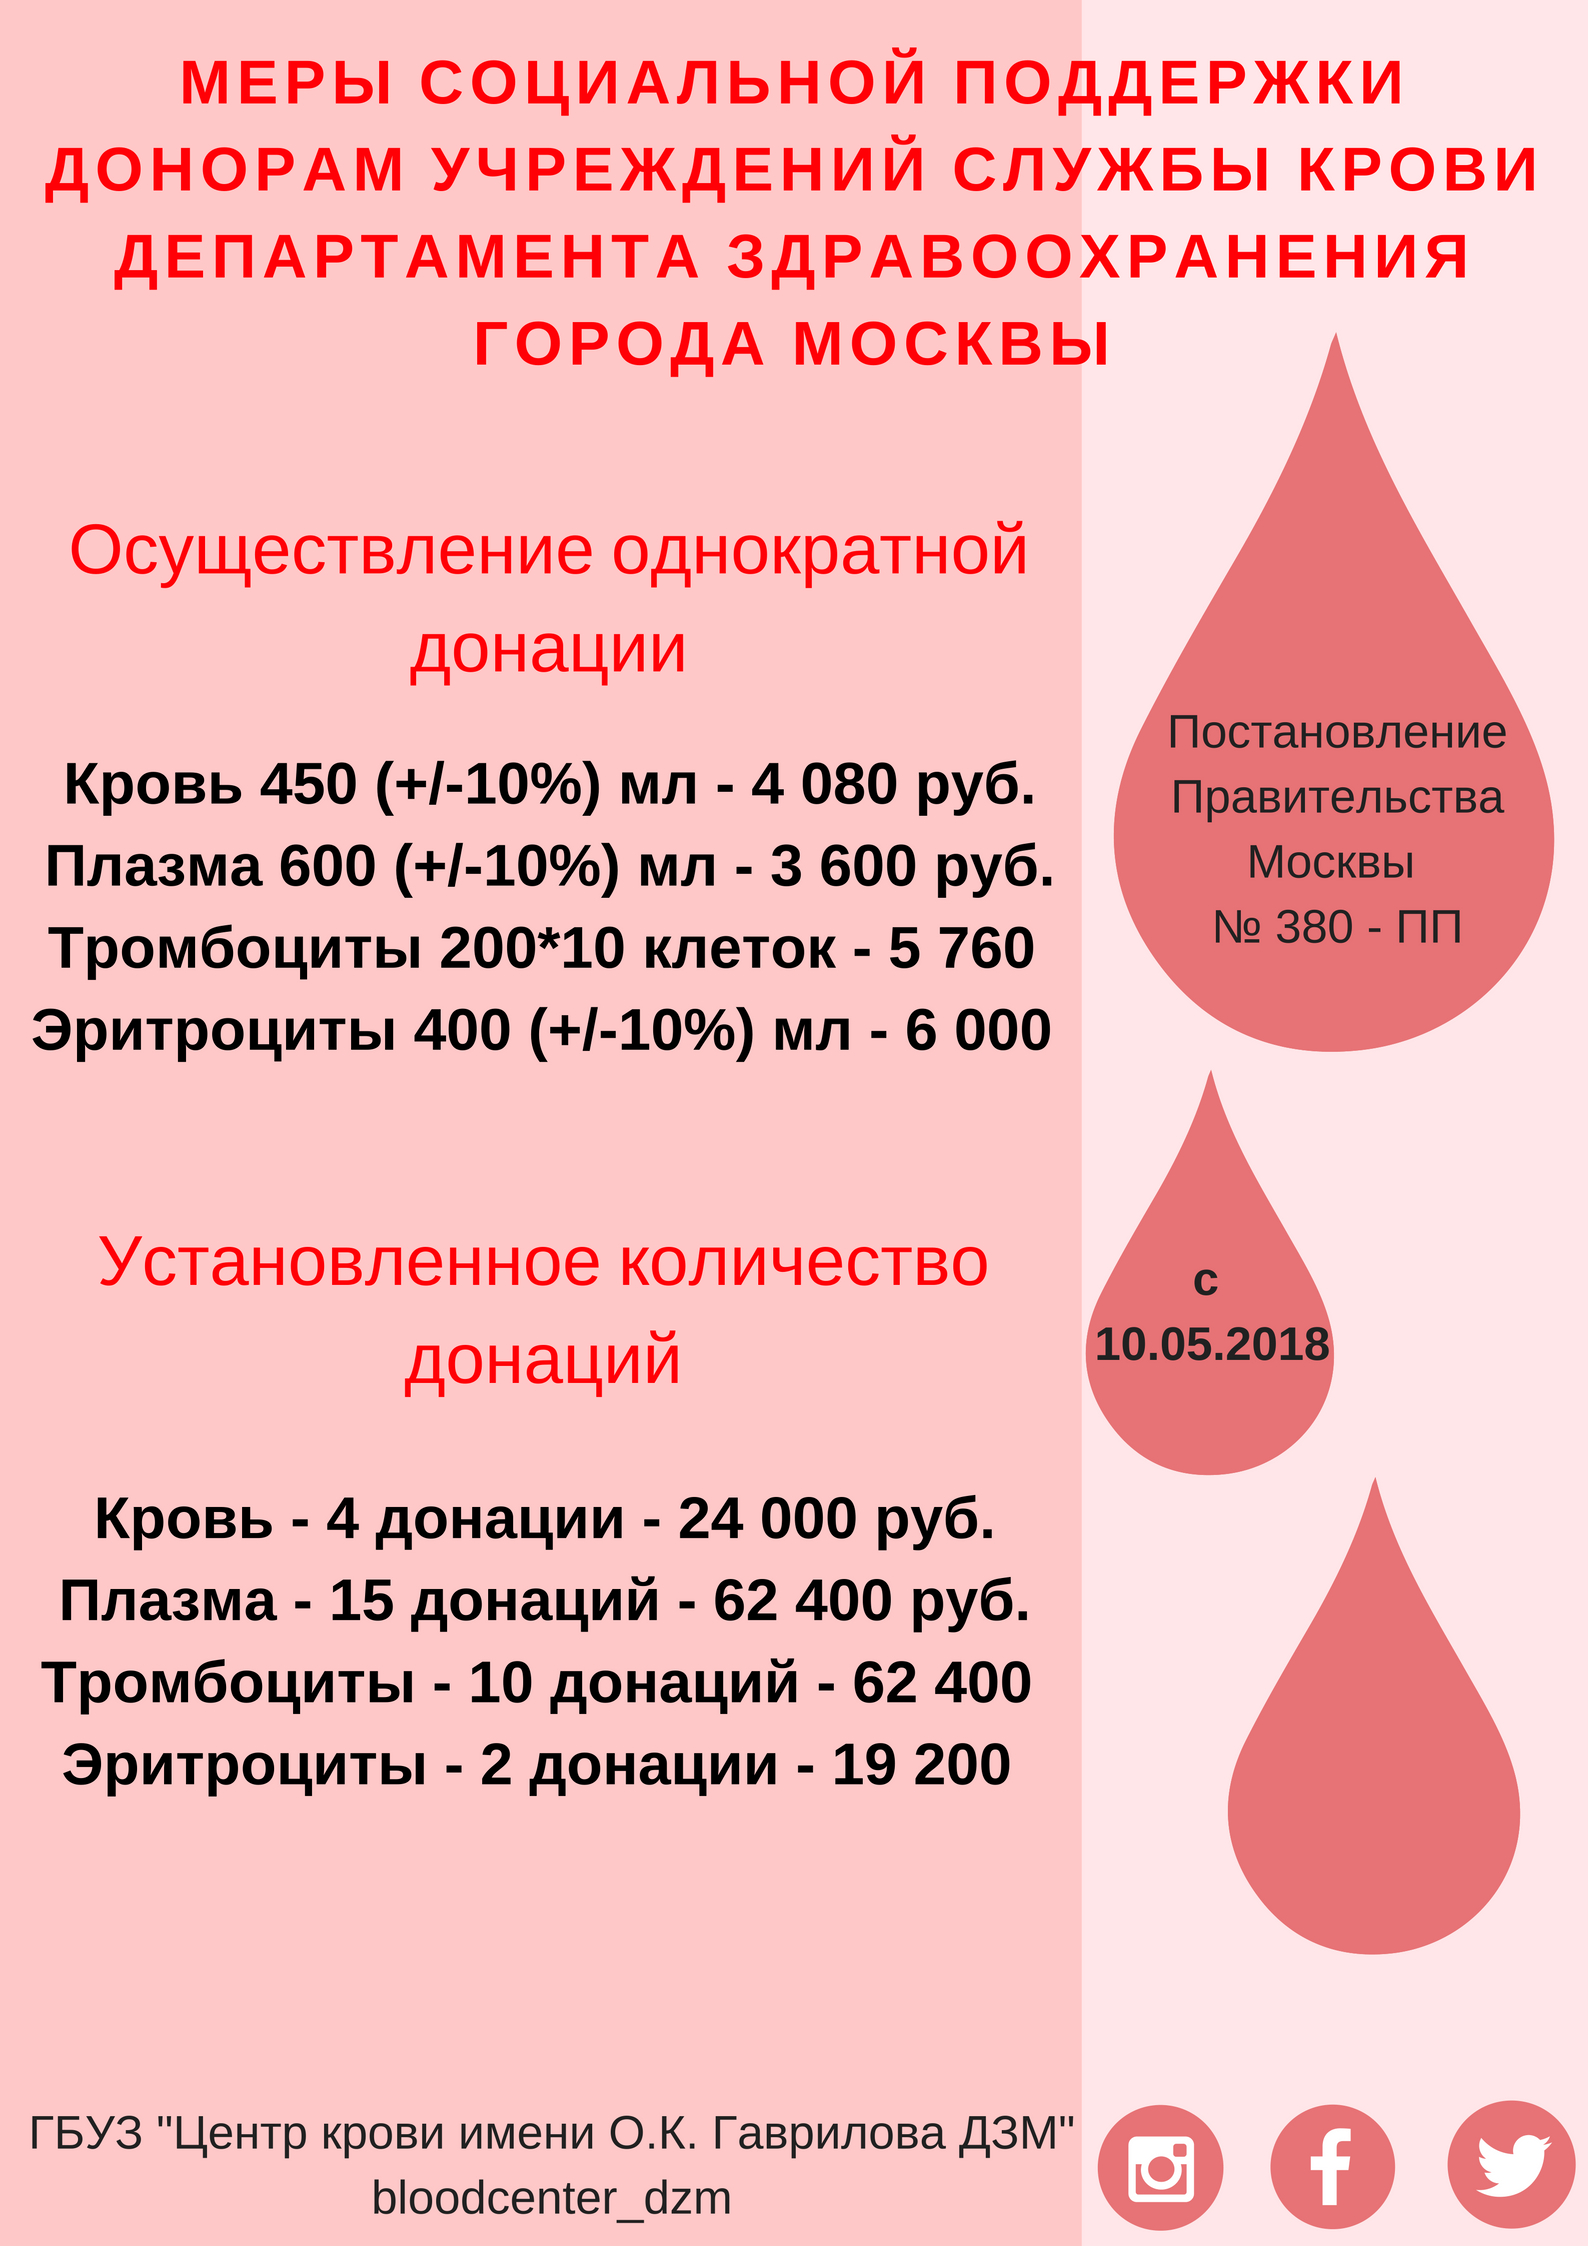 Компенсации донорам крови. Вознаграждение за донорство крови. Плата донорам за сдачу крови. Сколько платят за сдачу крови в Москве. Почётный донор Москвы льготы.